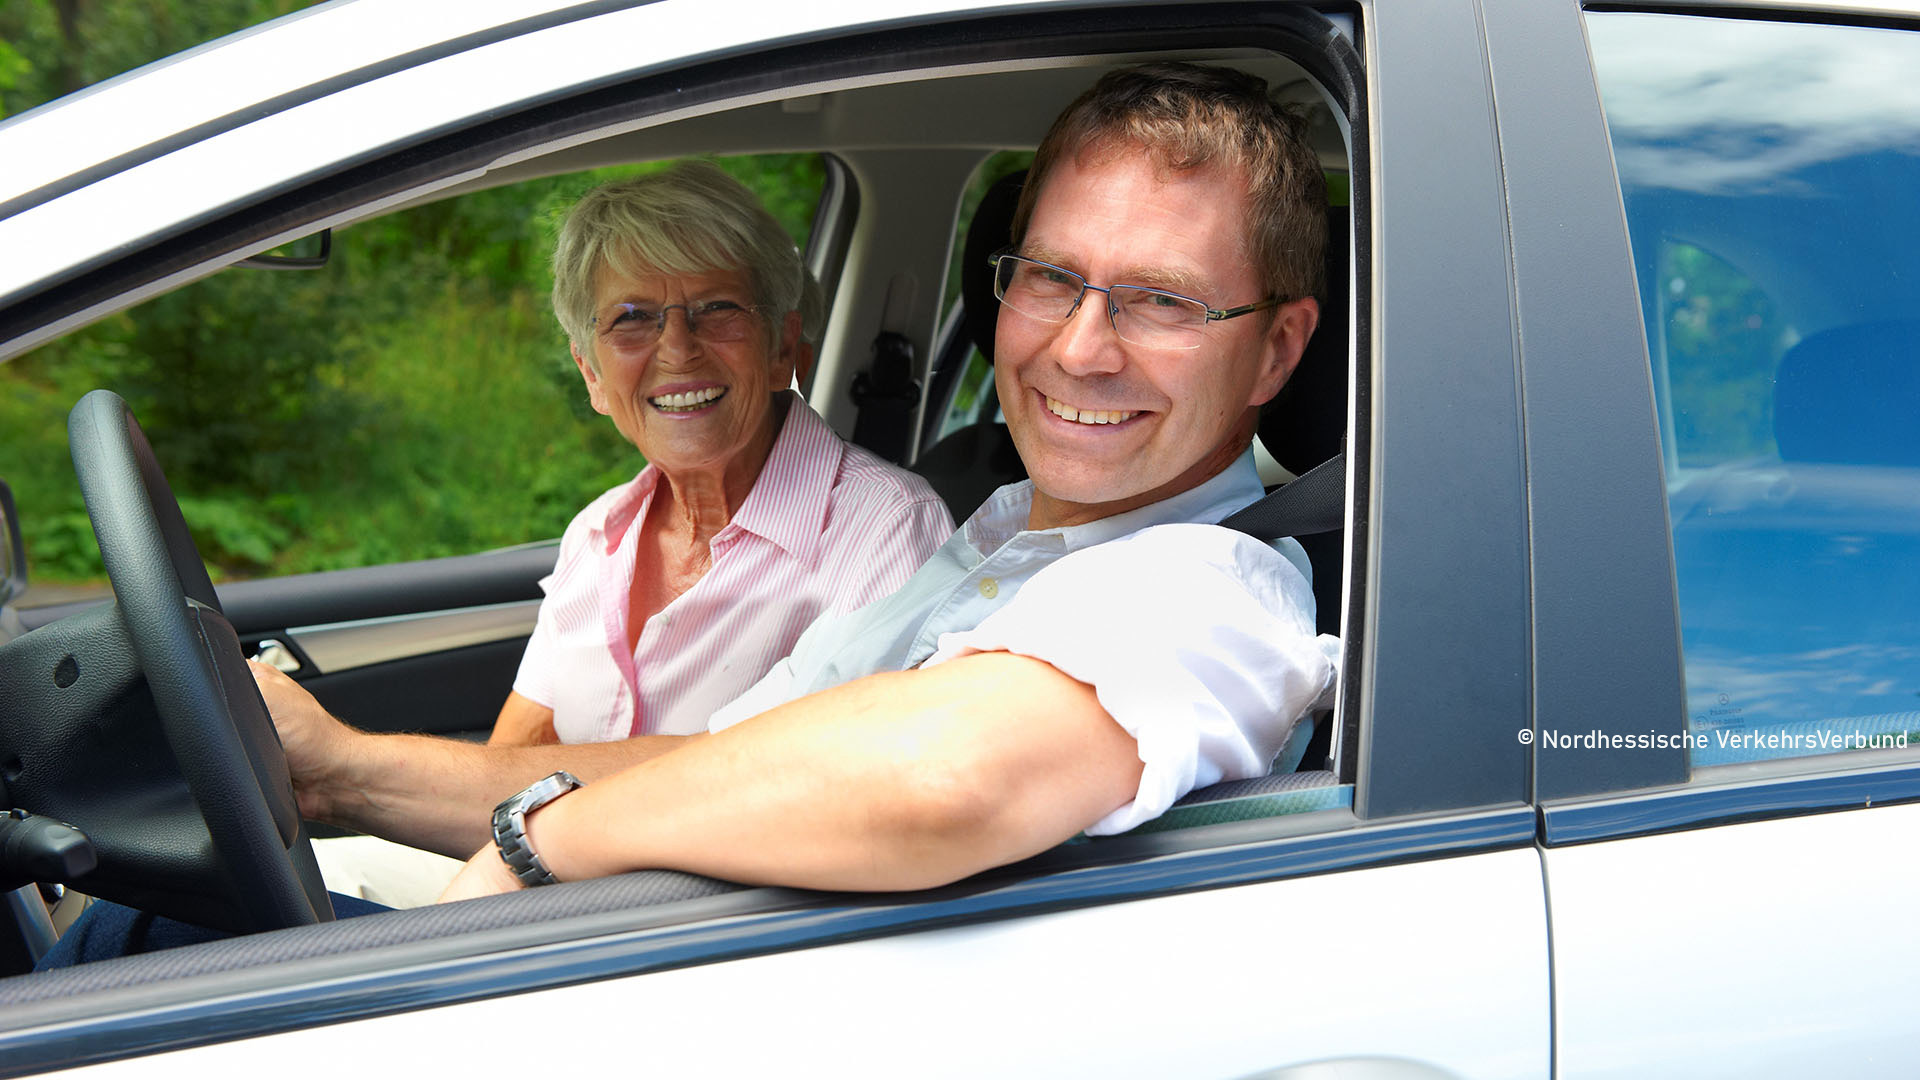 Zwei Personen in einem Auto, die durch das Fenster in die Kamera lächeln.